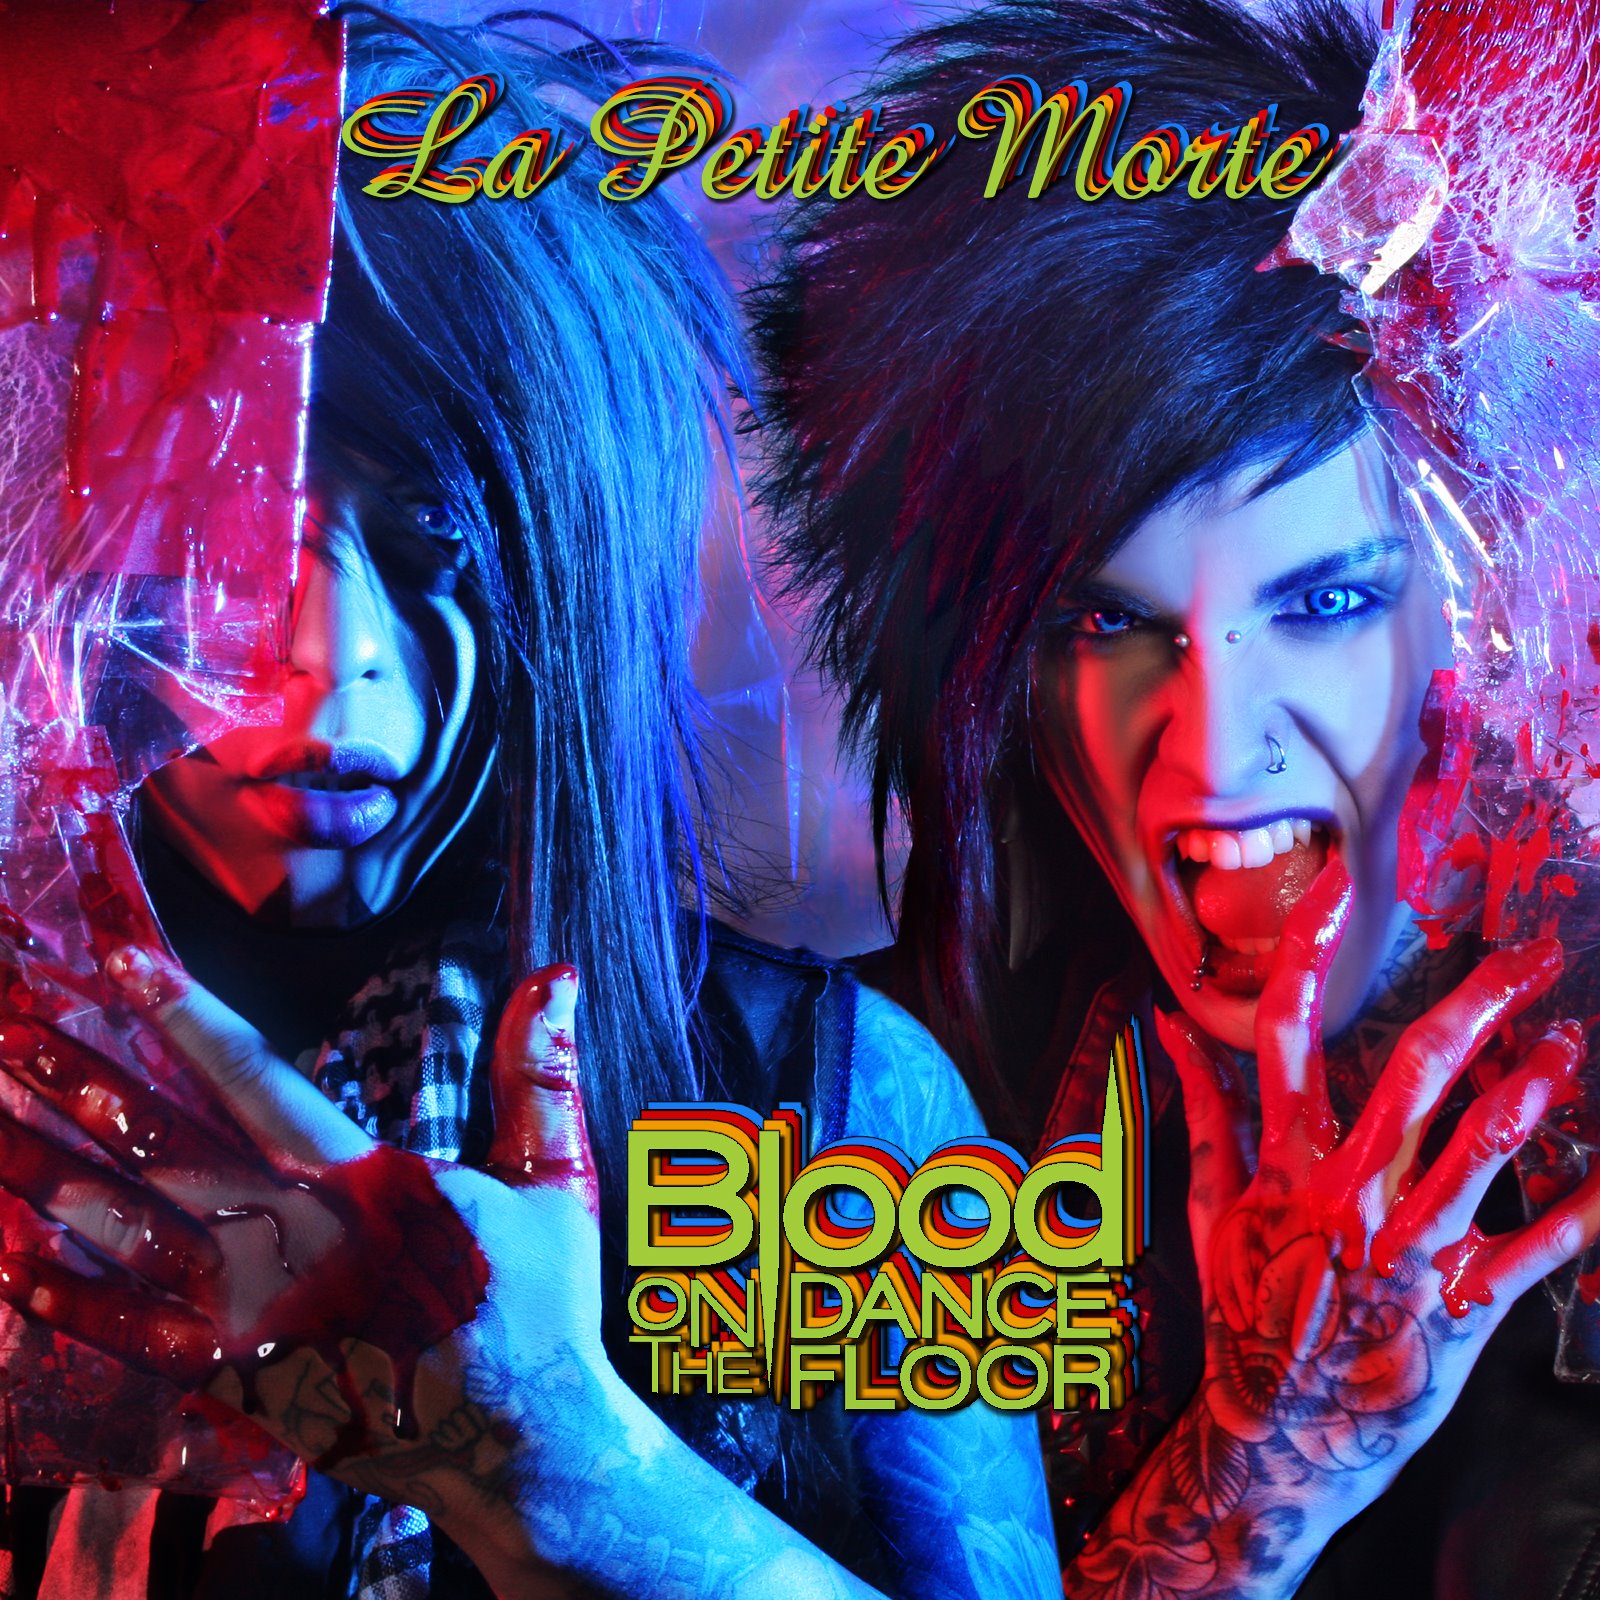 blood on the dance floor album mp3 download